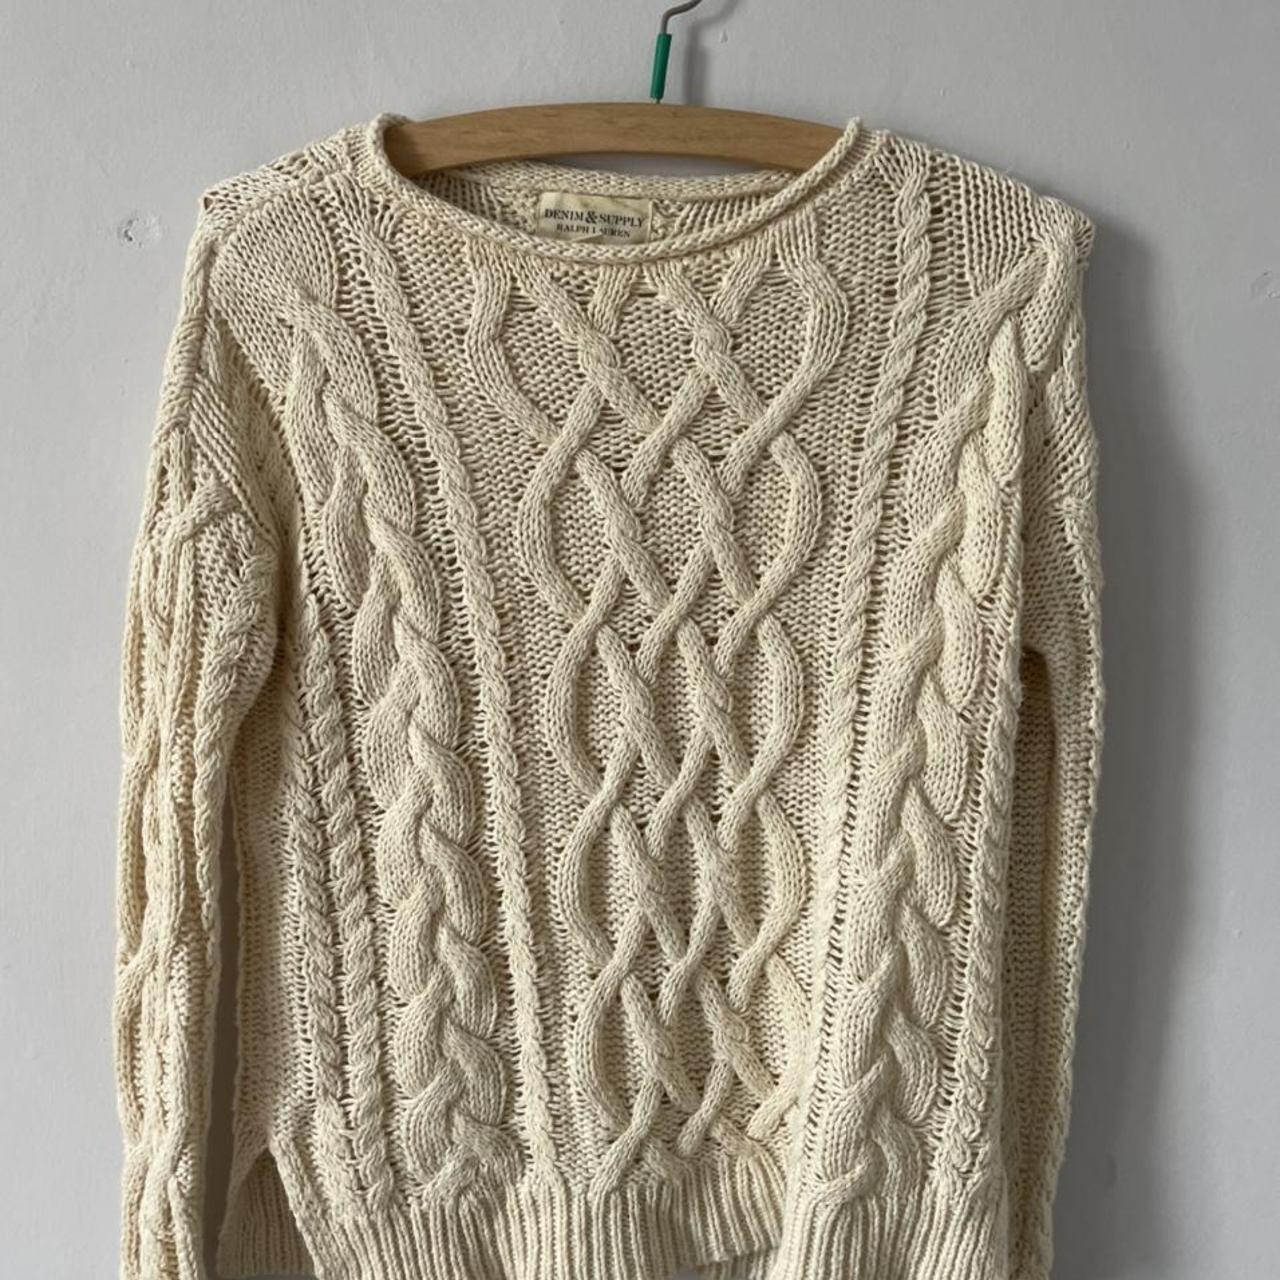 White cable knit summer Ralph Lauren jumper... - Depop